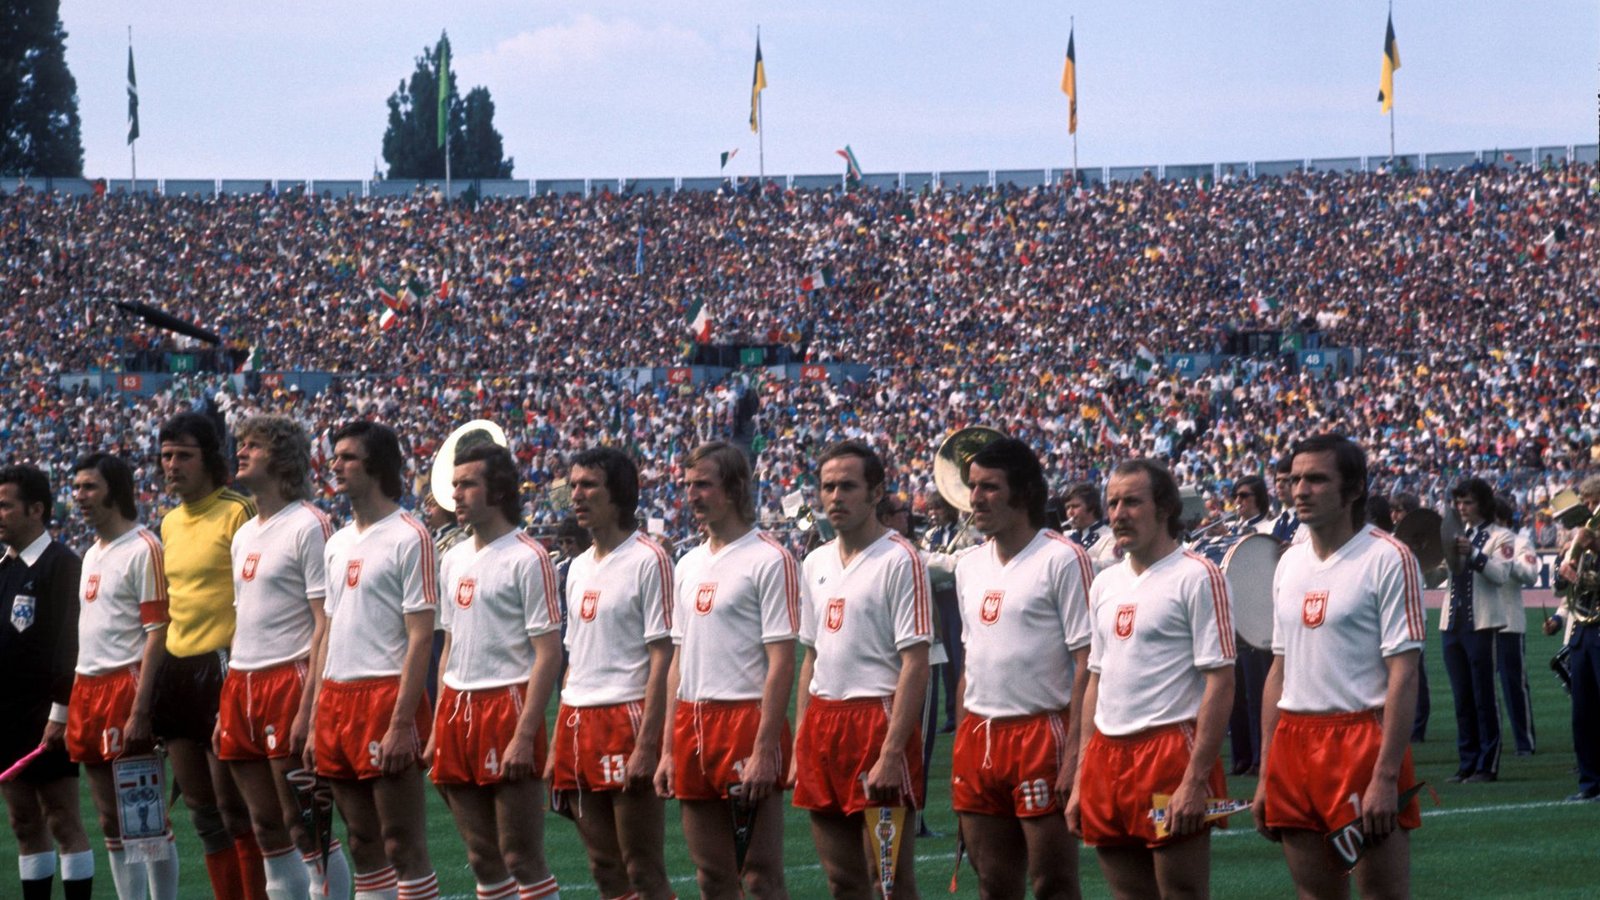 Bei der WM 1974 finden vier Partien in Stuttgart statt – drei davon mit Beteiligung der polnischen Mannschaft.Foto: imago